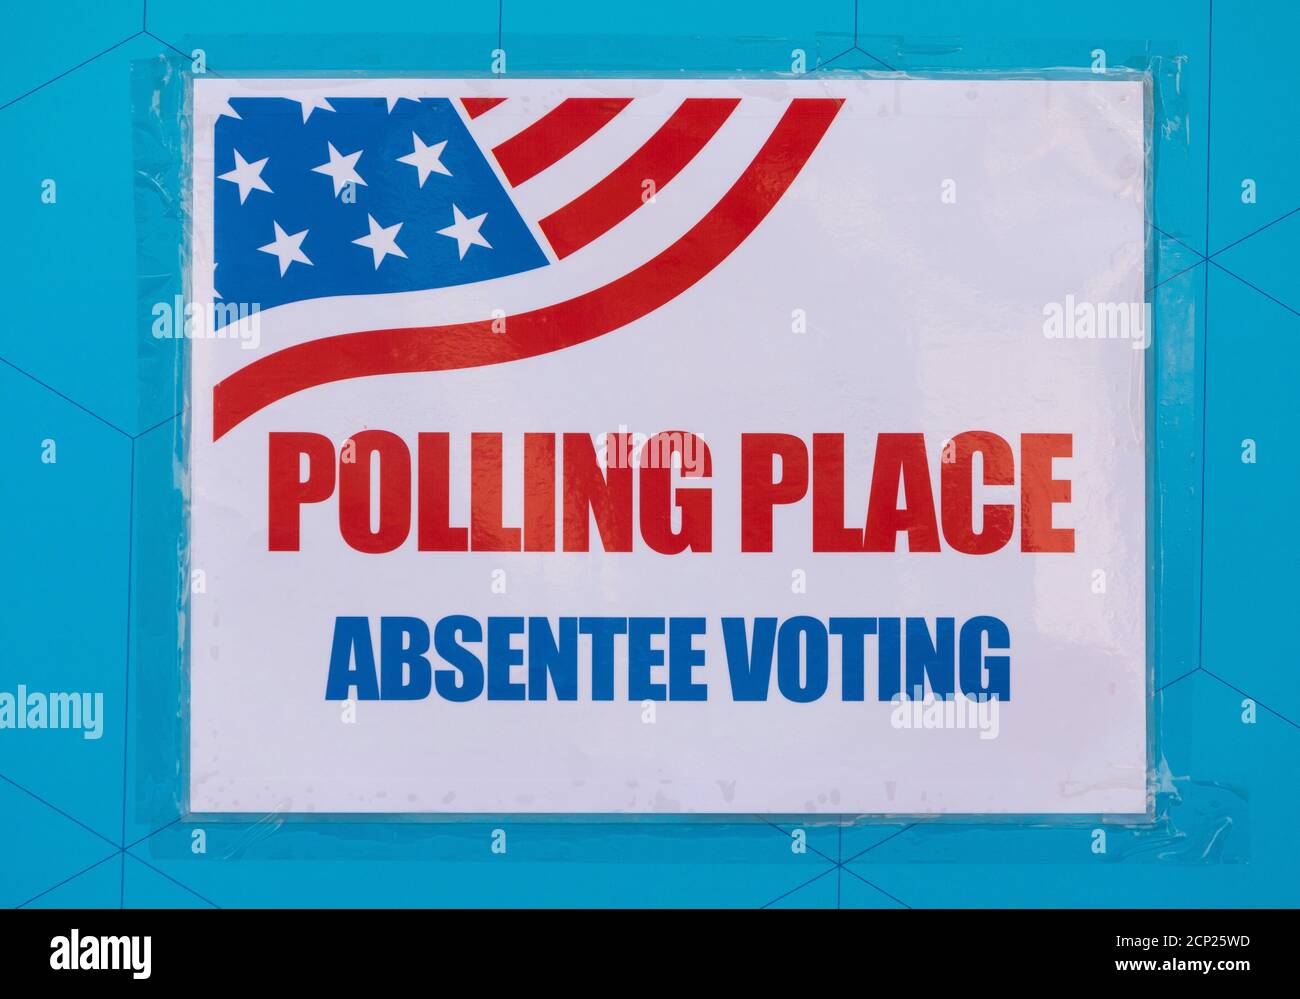 ARLINGTON, VIRGINIA, USA, 18. SEPTEMBER 2020 - Polling Platz Zeichen während des ersten Tages der vorzeitigen Abstimmung, 2020 Präsidentschaftswahl. Stockfoto